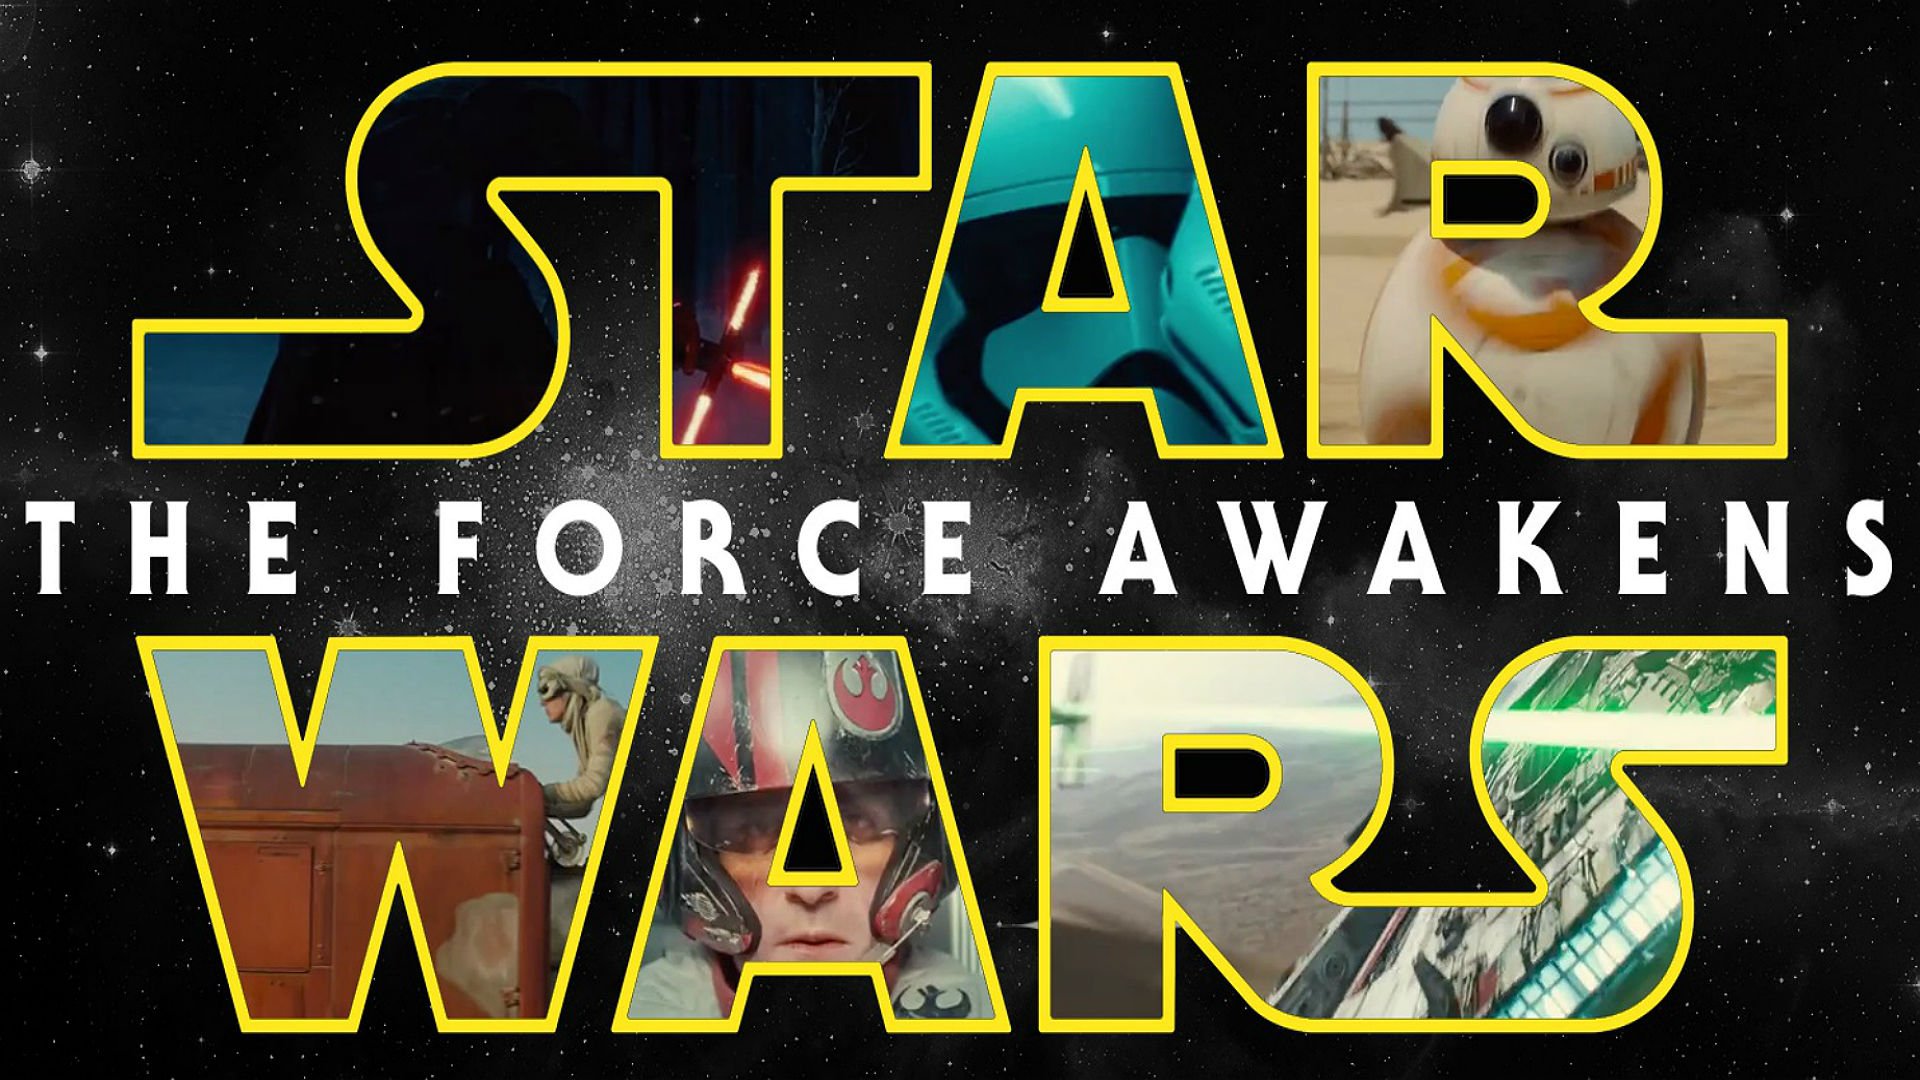 star, Wars, Force, Awakens, Sci fi, Futuristic, Disney, Action, Adventure, 1star wars force awakens, Poster Wallpaper